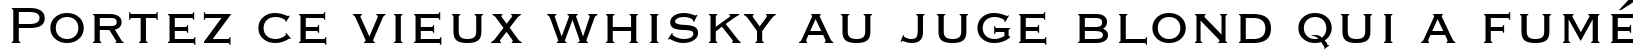 Пример написания шрифтом font122 текста на французском